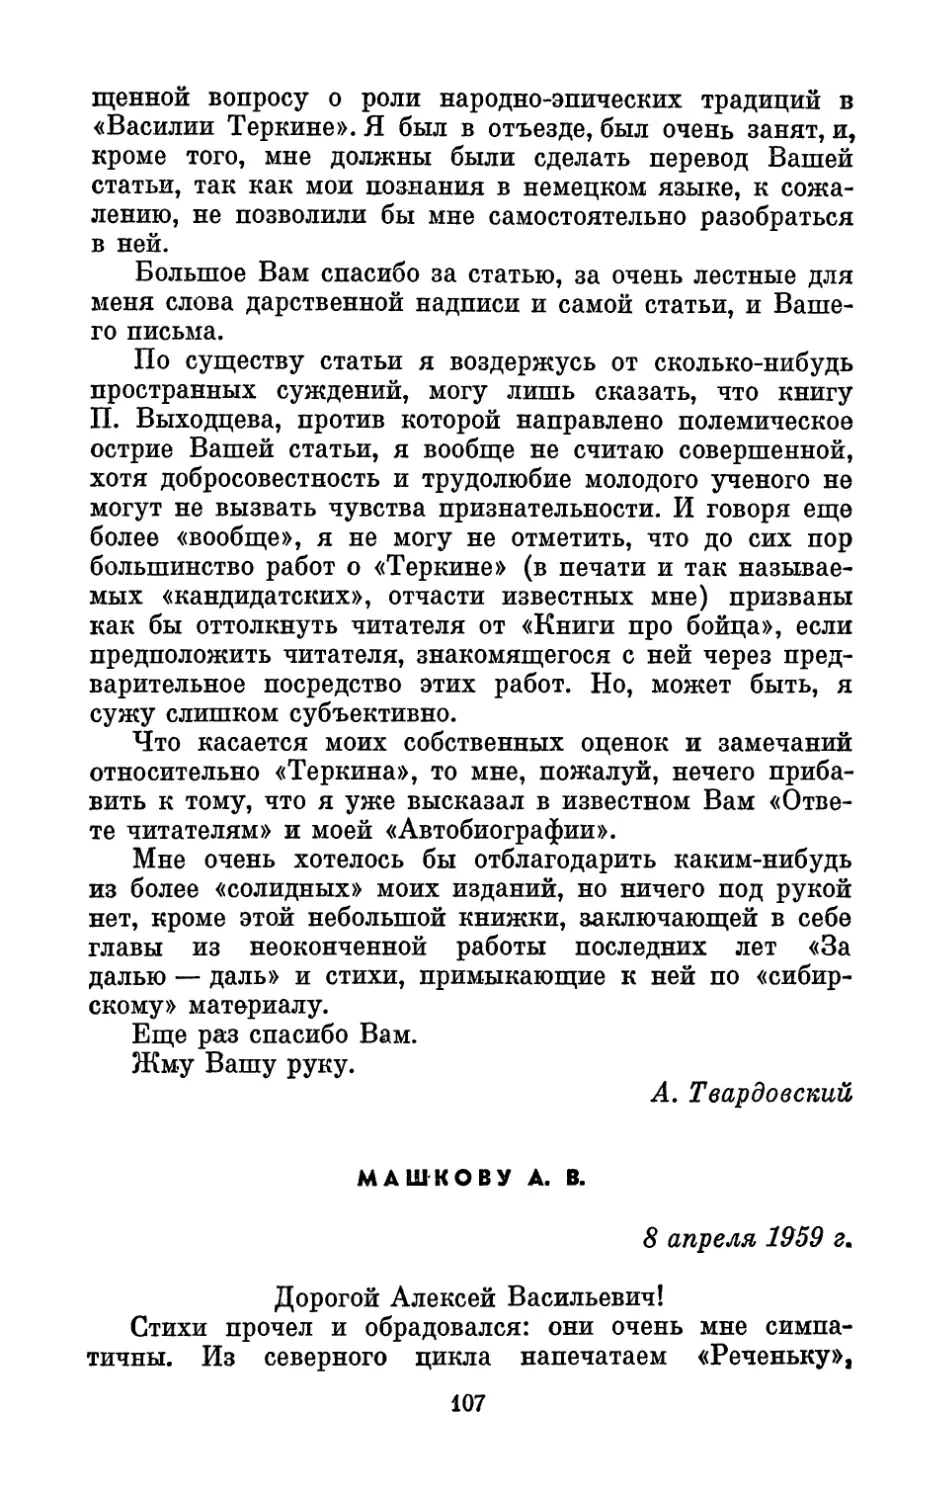 Машкову А. В., 8 апреля 1959 г.